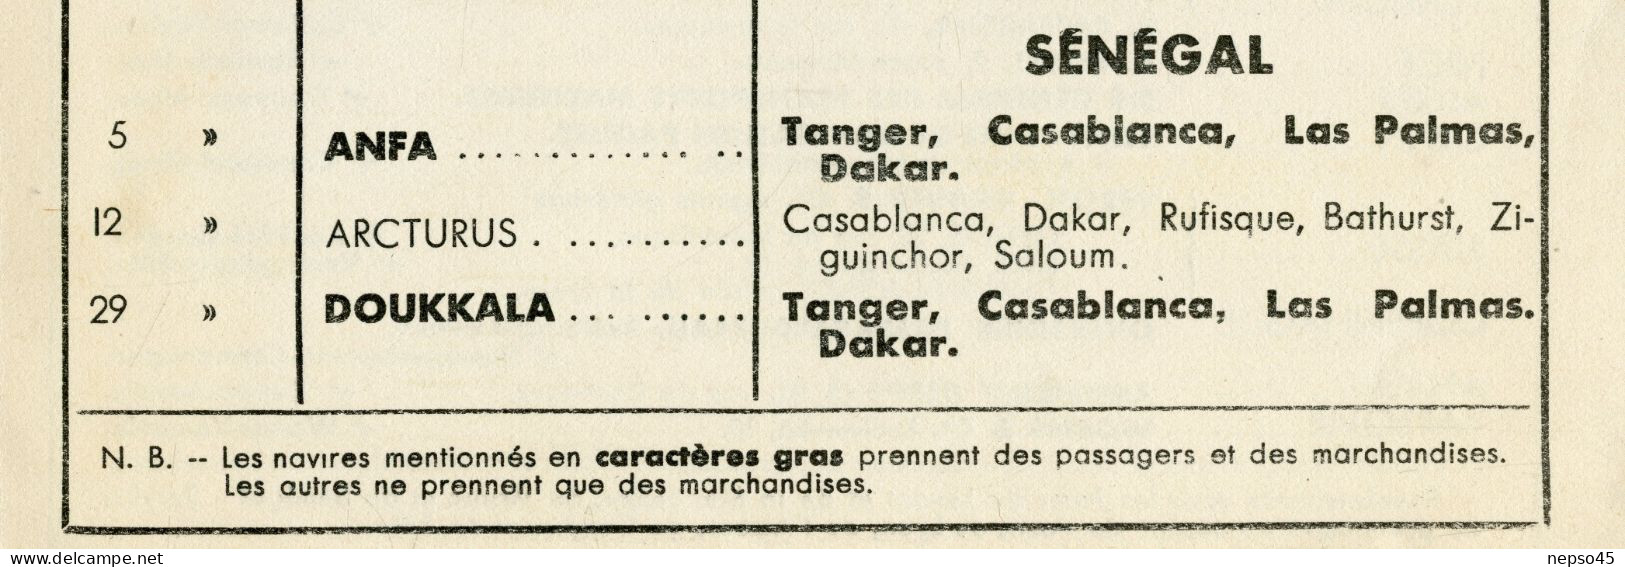 Compagnie de Navigation Paquet.Septembre 1934 Horaires Passagers Marchandises.